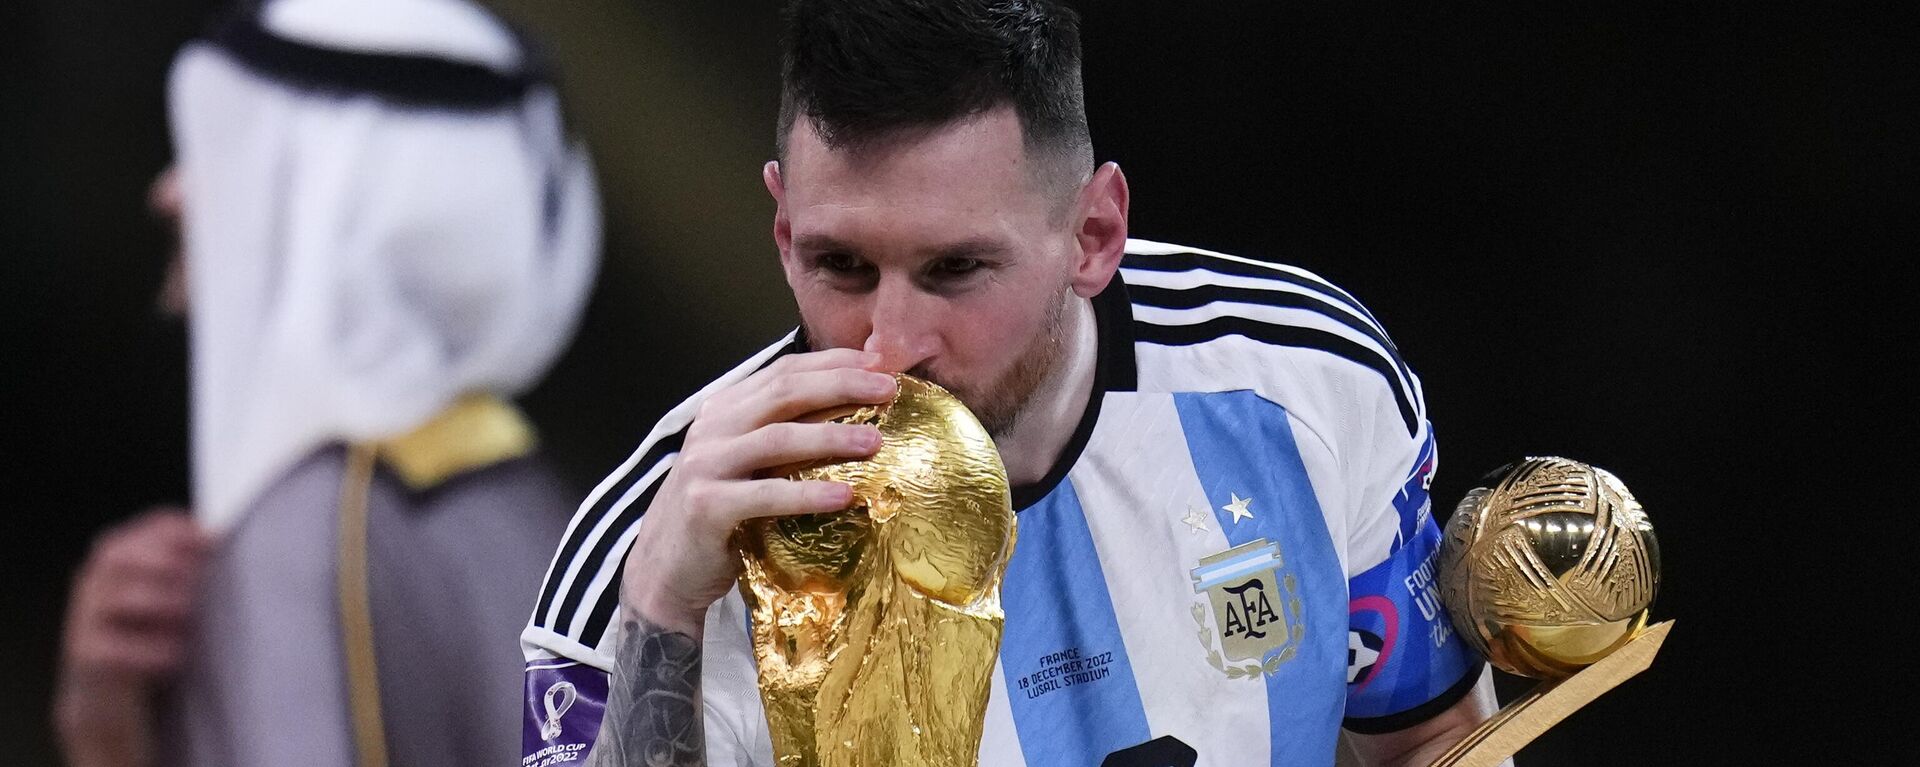 O argentino Lionel Messi beija a taça da Copa do Mundo após vitória da Argentina sobre a França no Catar, em 18 de dezembro de 2022 - Sputnik Brasil, 1920, 18.12.2022